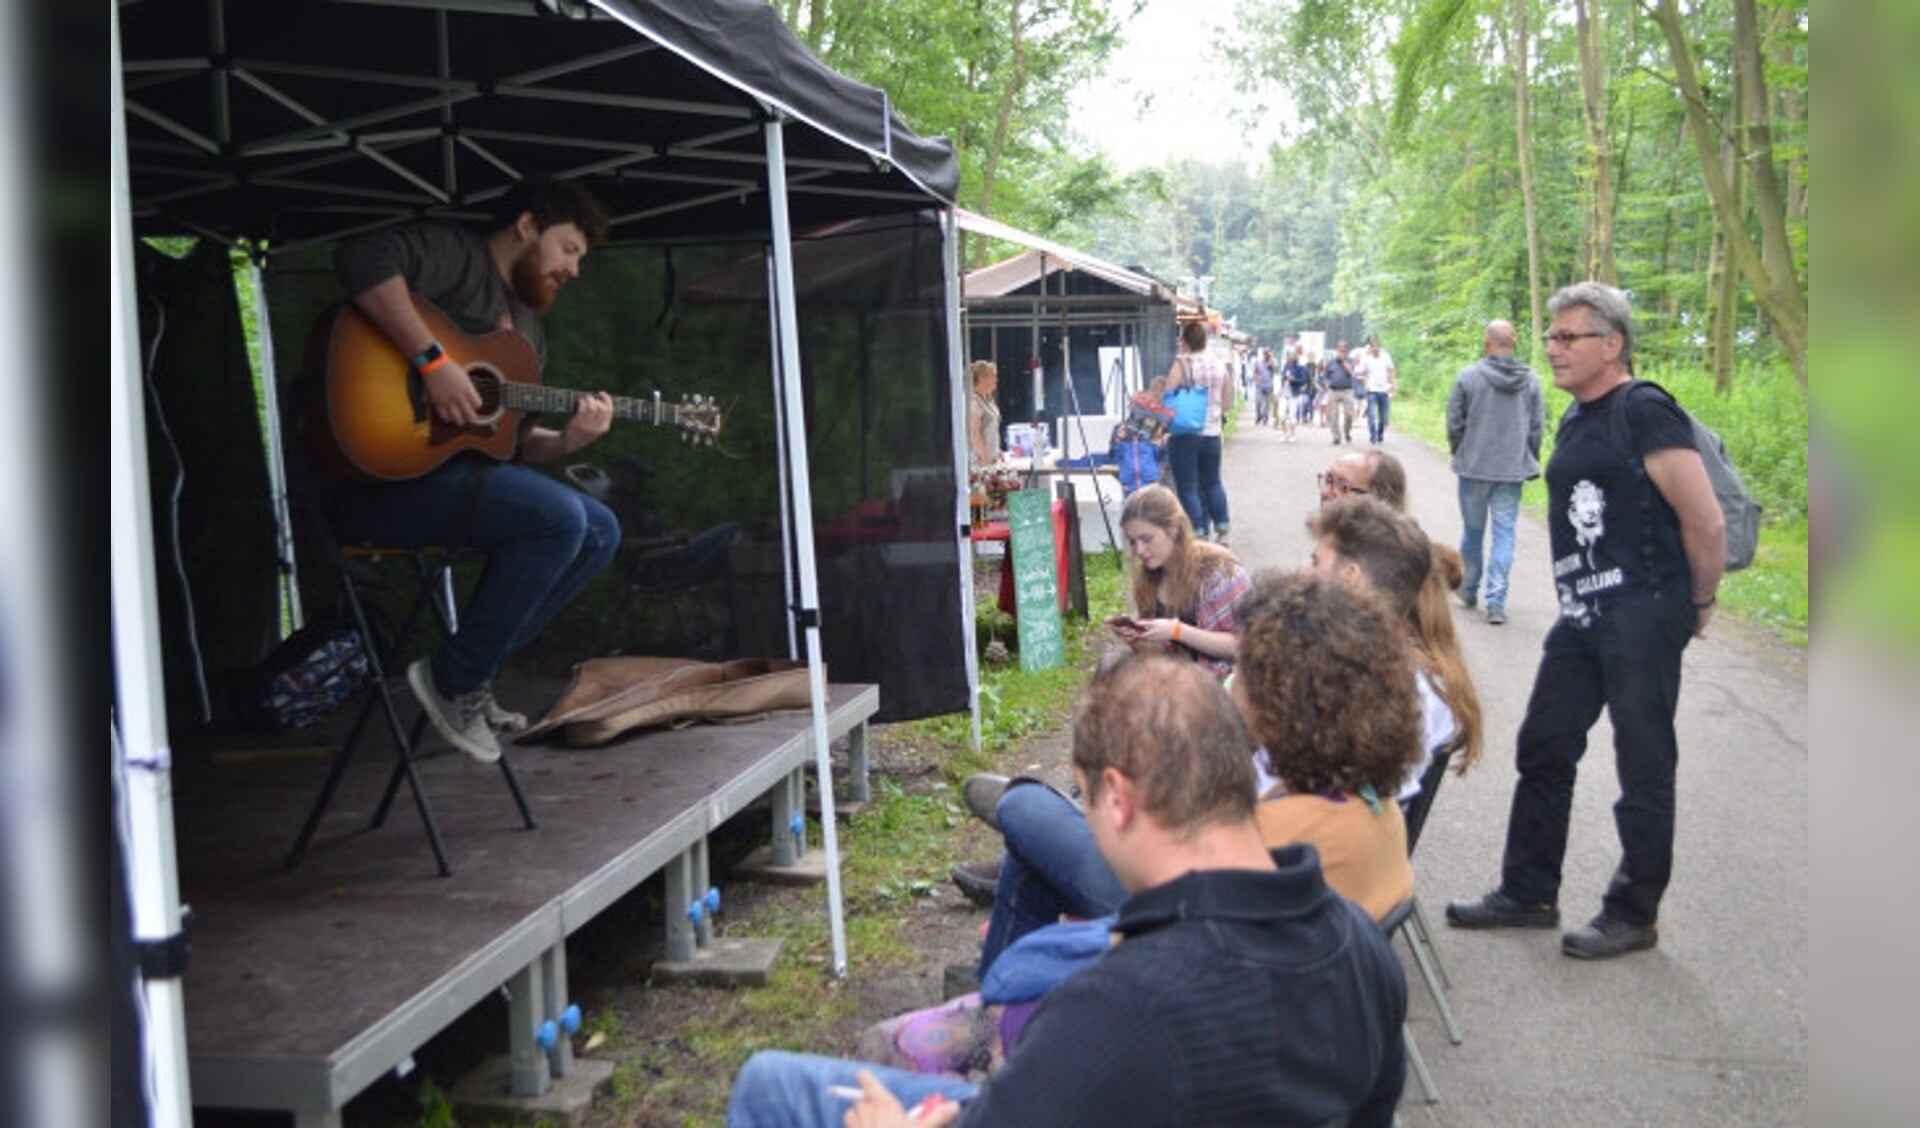  XL De Ateliers is onder andere organisator van het Wijland Festival in Dronten.